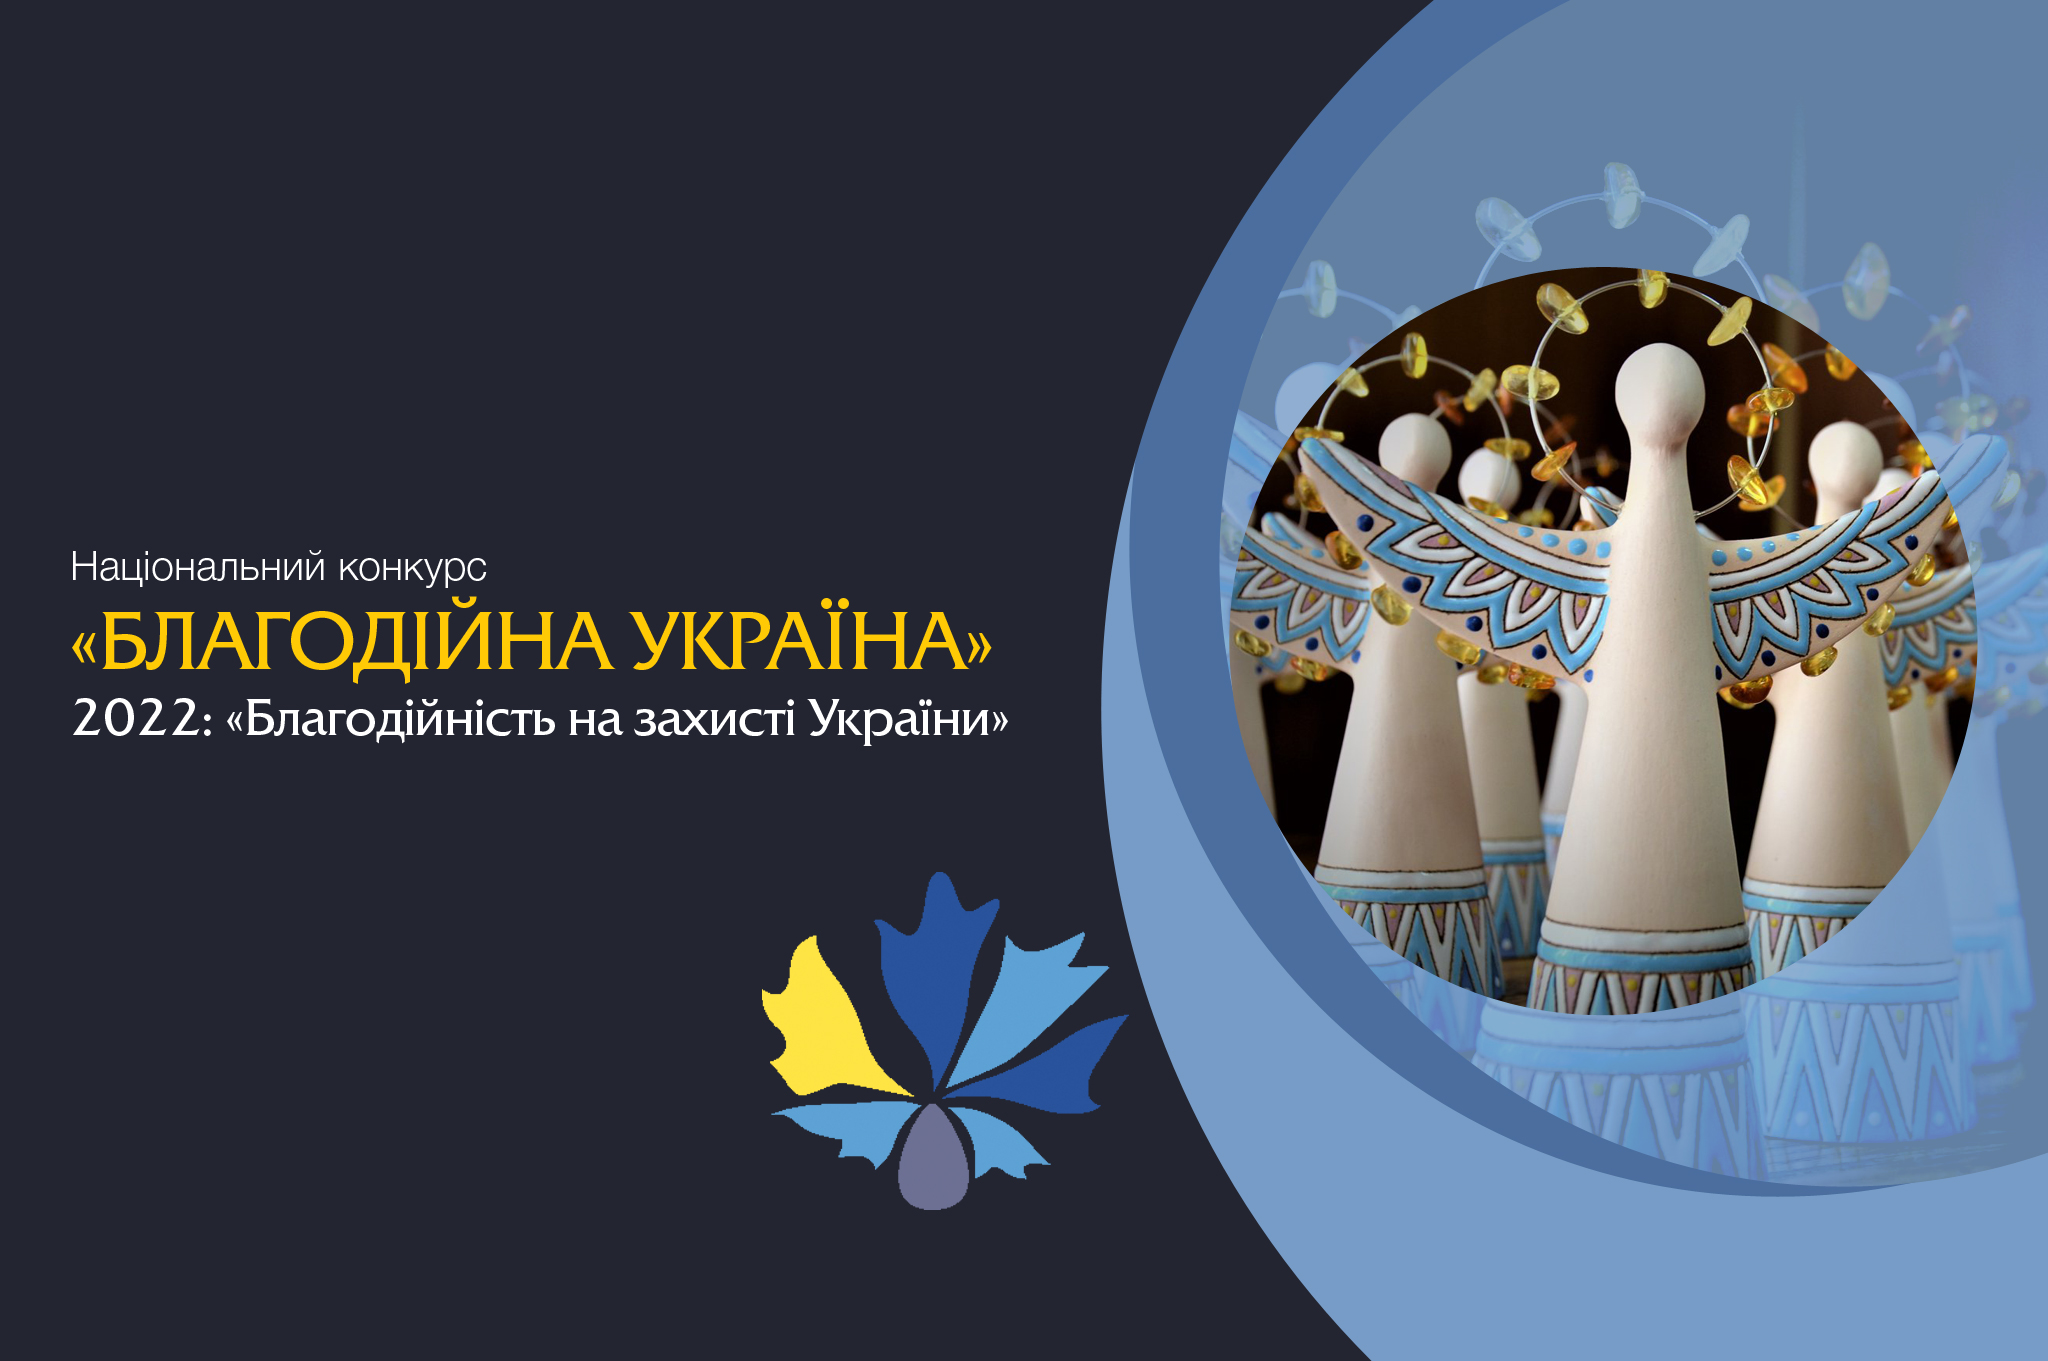 «Благодійність на захисті України»: національний конкурс доброчинців триває